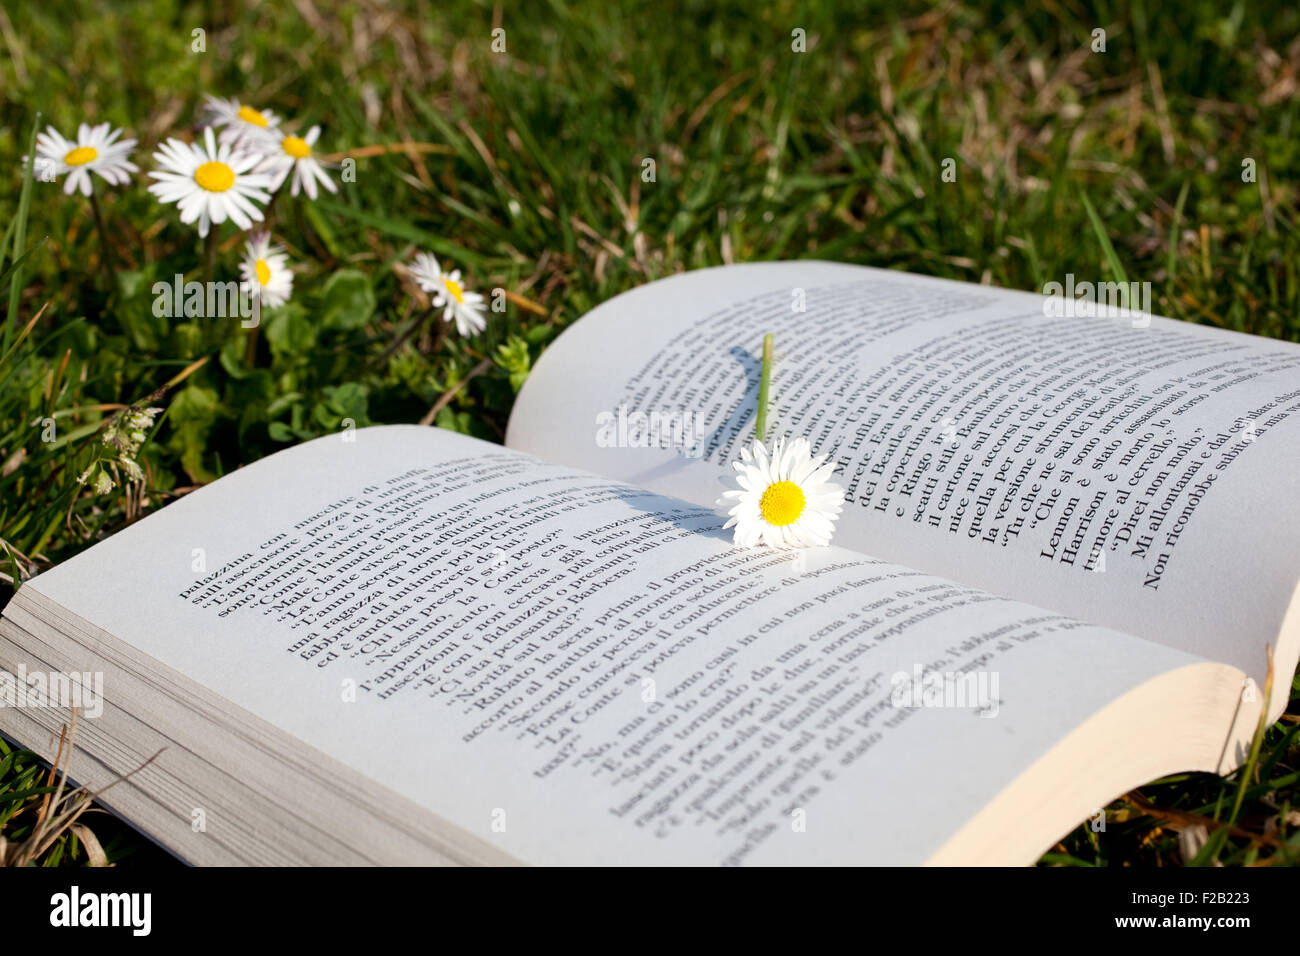 Gänseblümchen auf ein offenes Buch Stockfoto